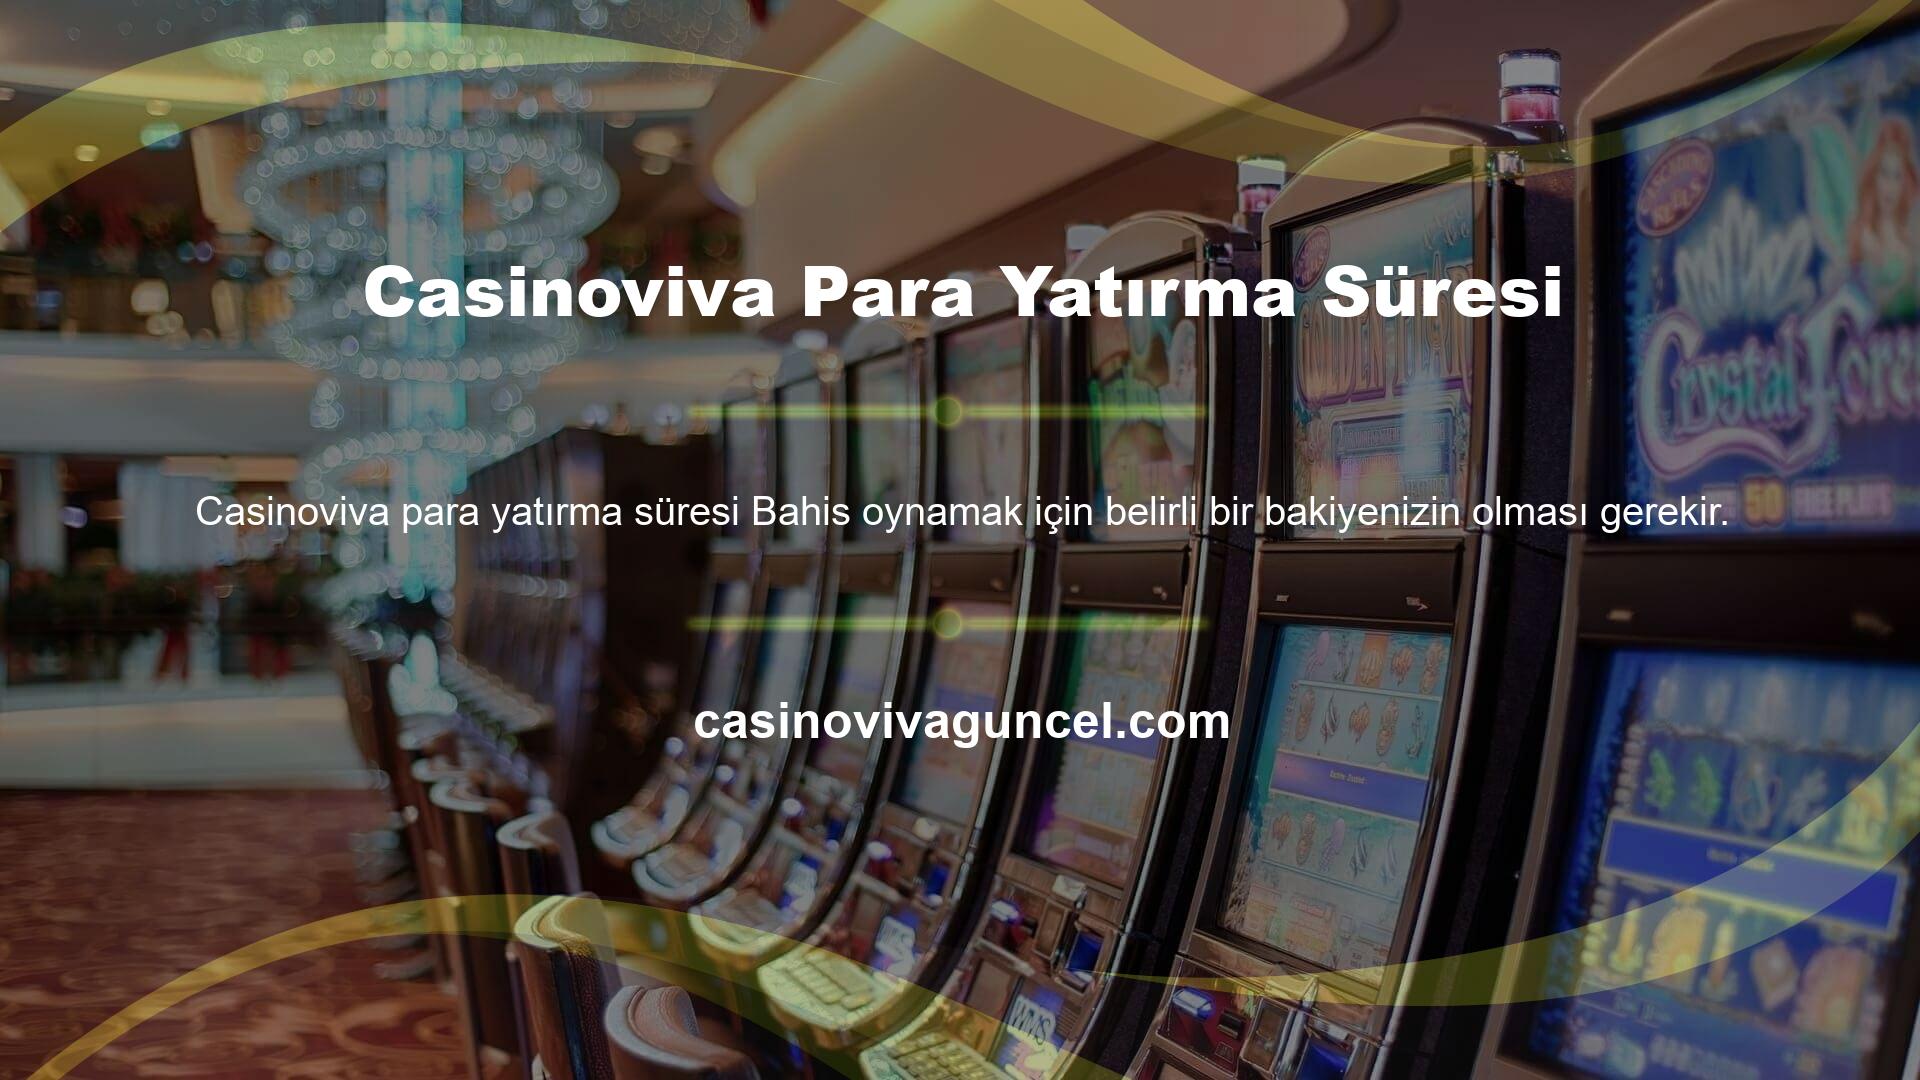 Casinoviva Para Yatırma Süresi Bakiye güncelleme işlemini günün herhangi bir saatinde çalıştırabilir ve tamamlayabilirsiniz